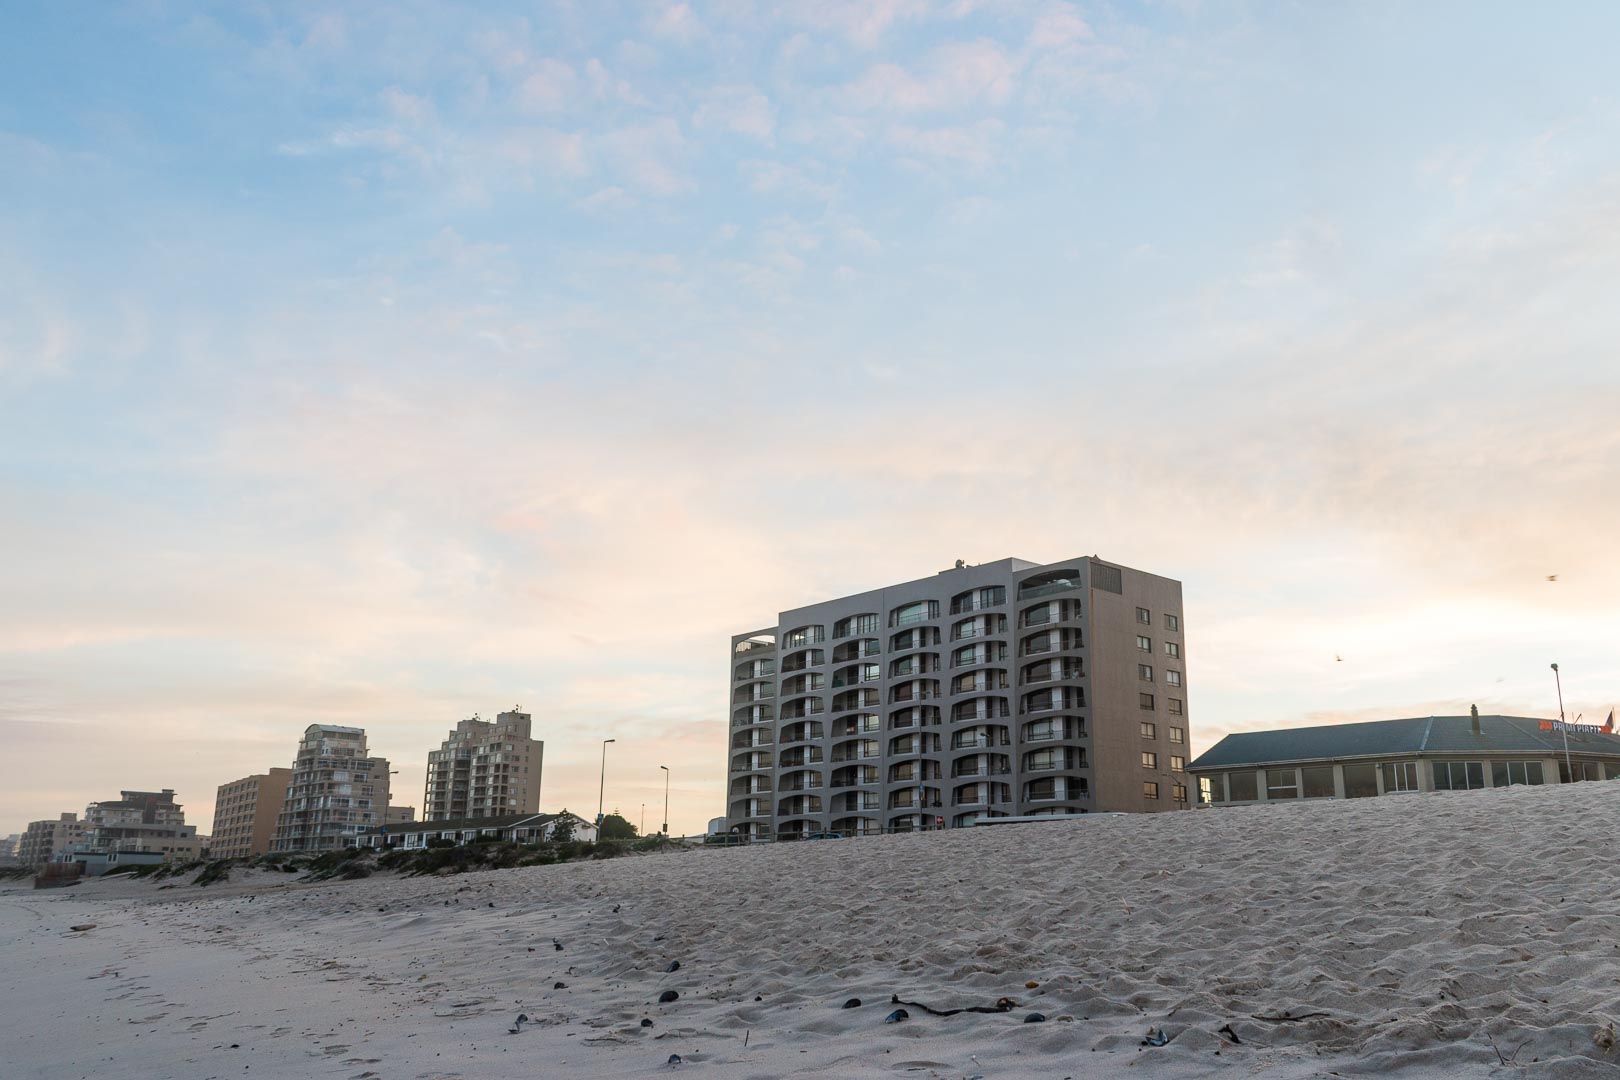 Backplate • ID: 4213 • HDRI Haven - Sunrise On The Beach